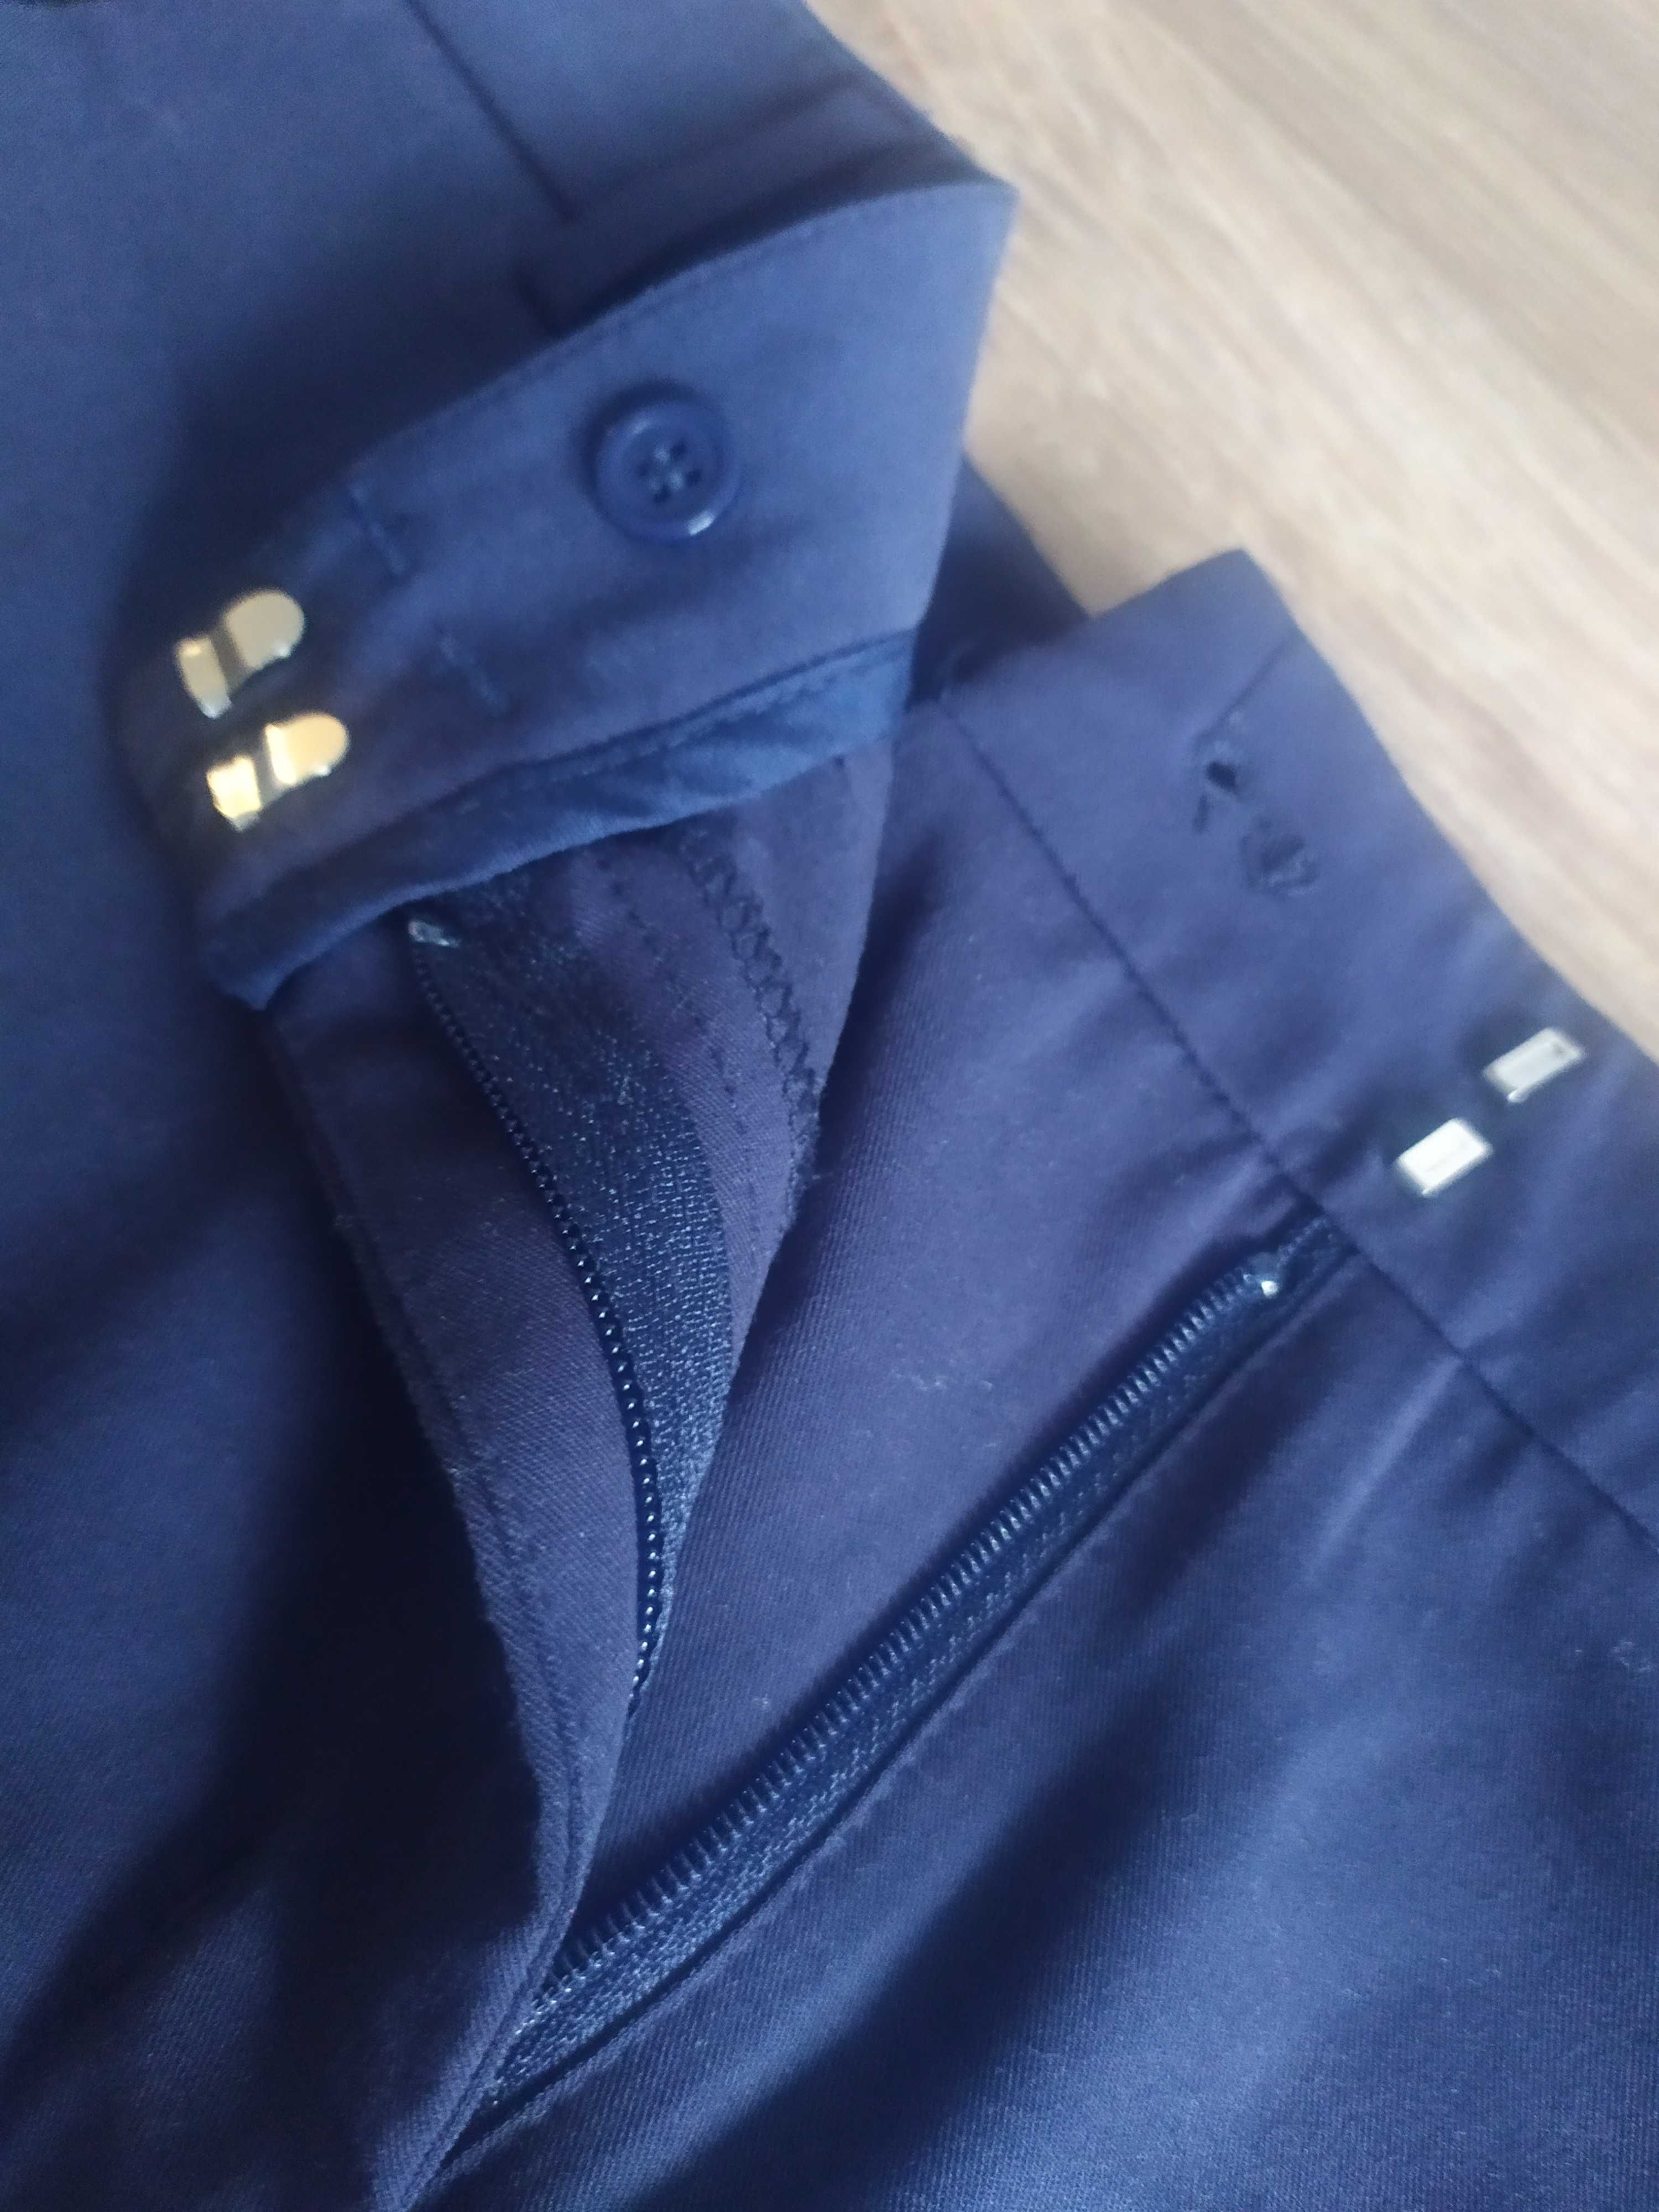 Granatowe spodenki TARANKO 38 M krótkie ciemne spodnie jak nowe